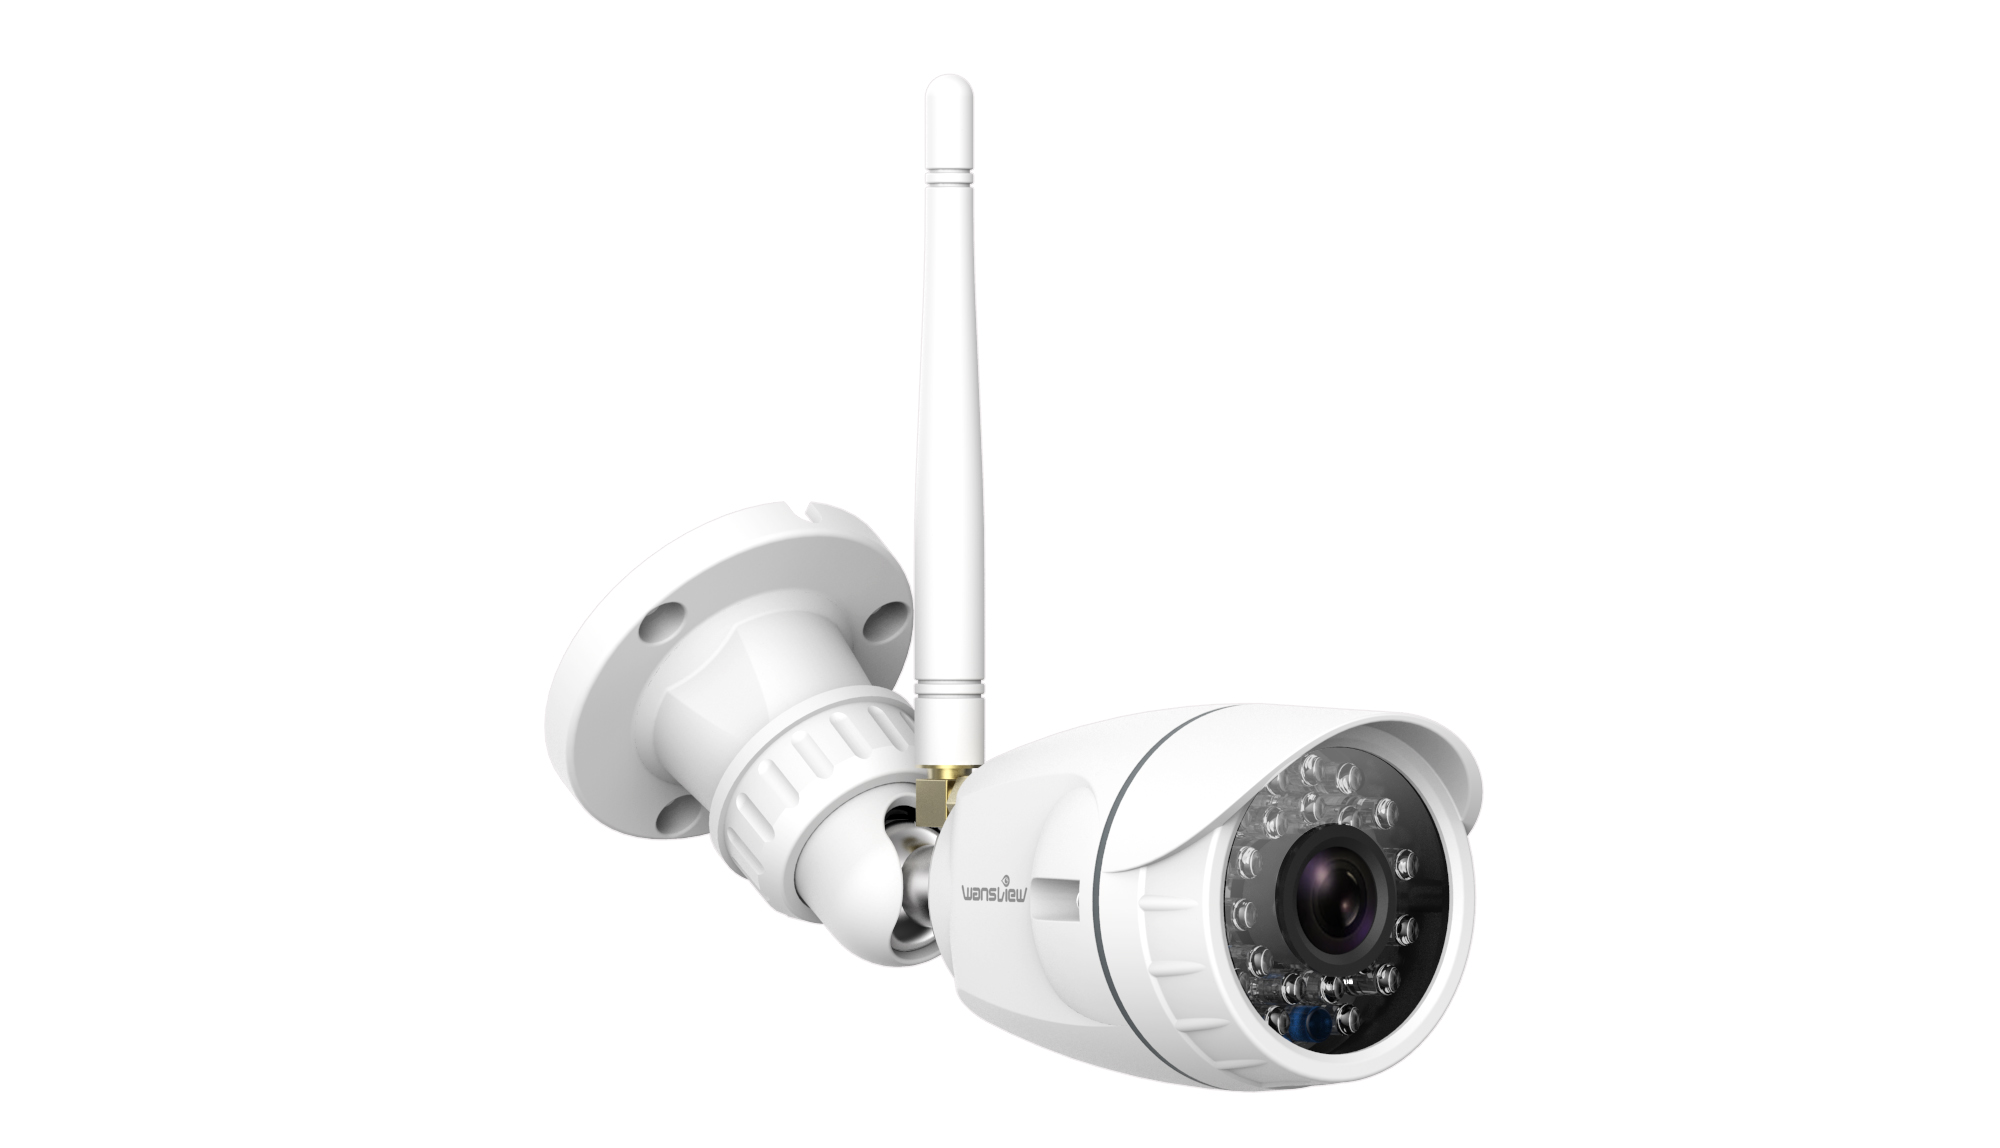 Suitable for outdoor surveillance cameras